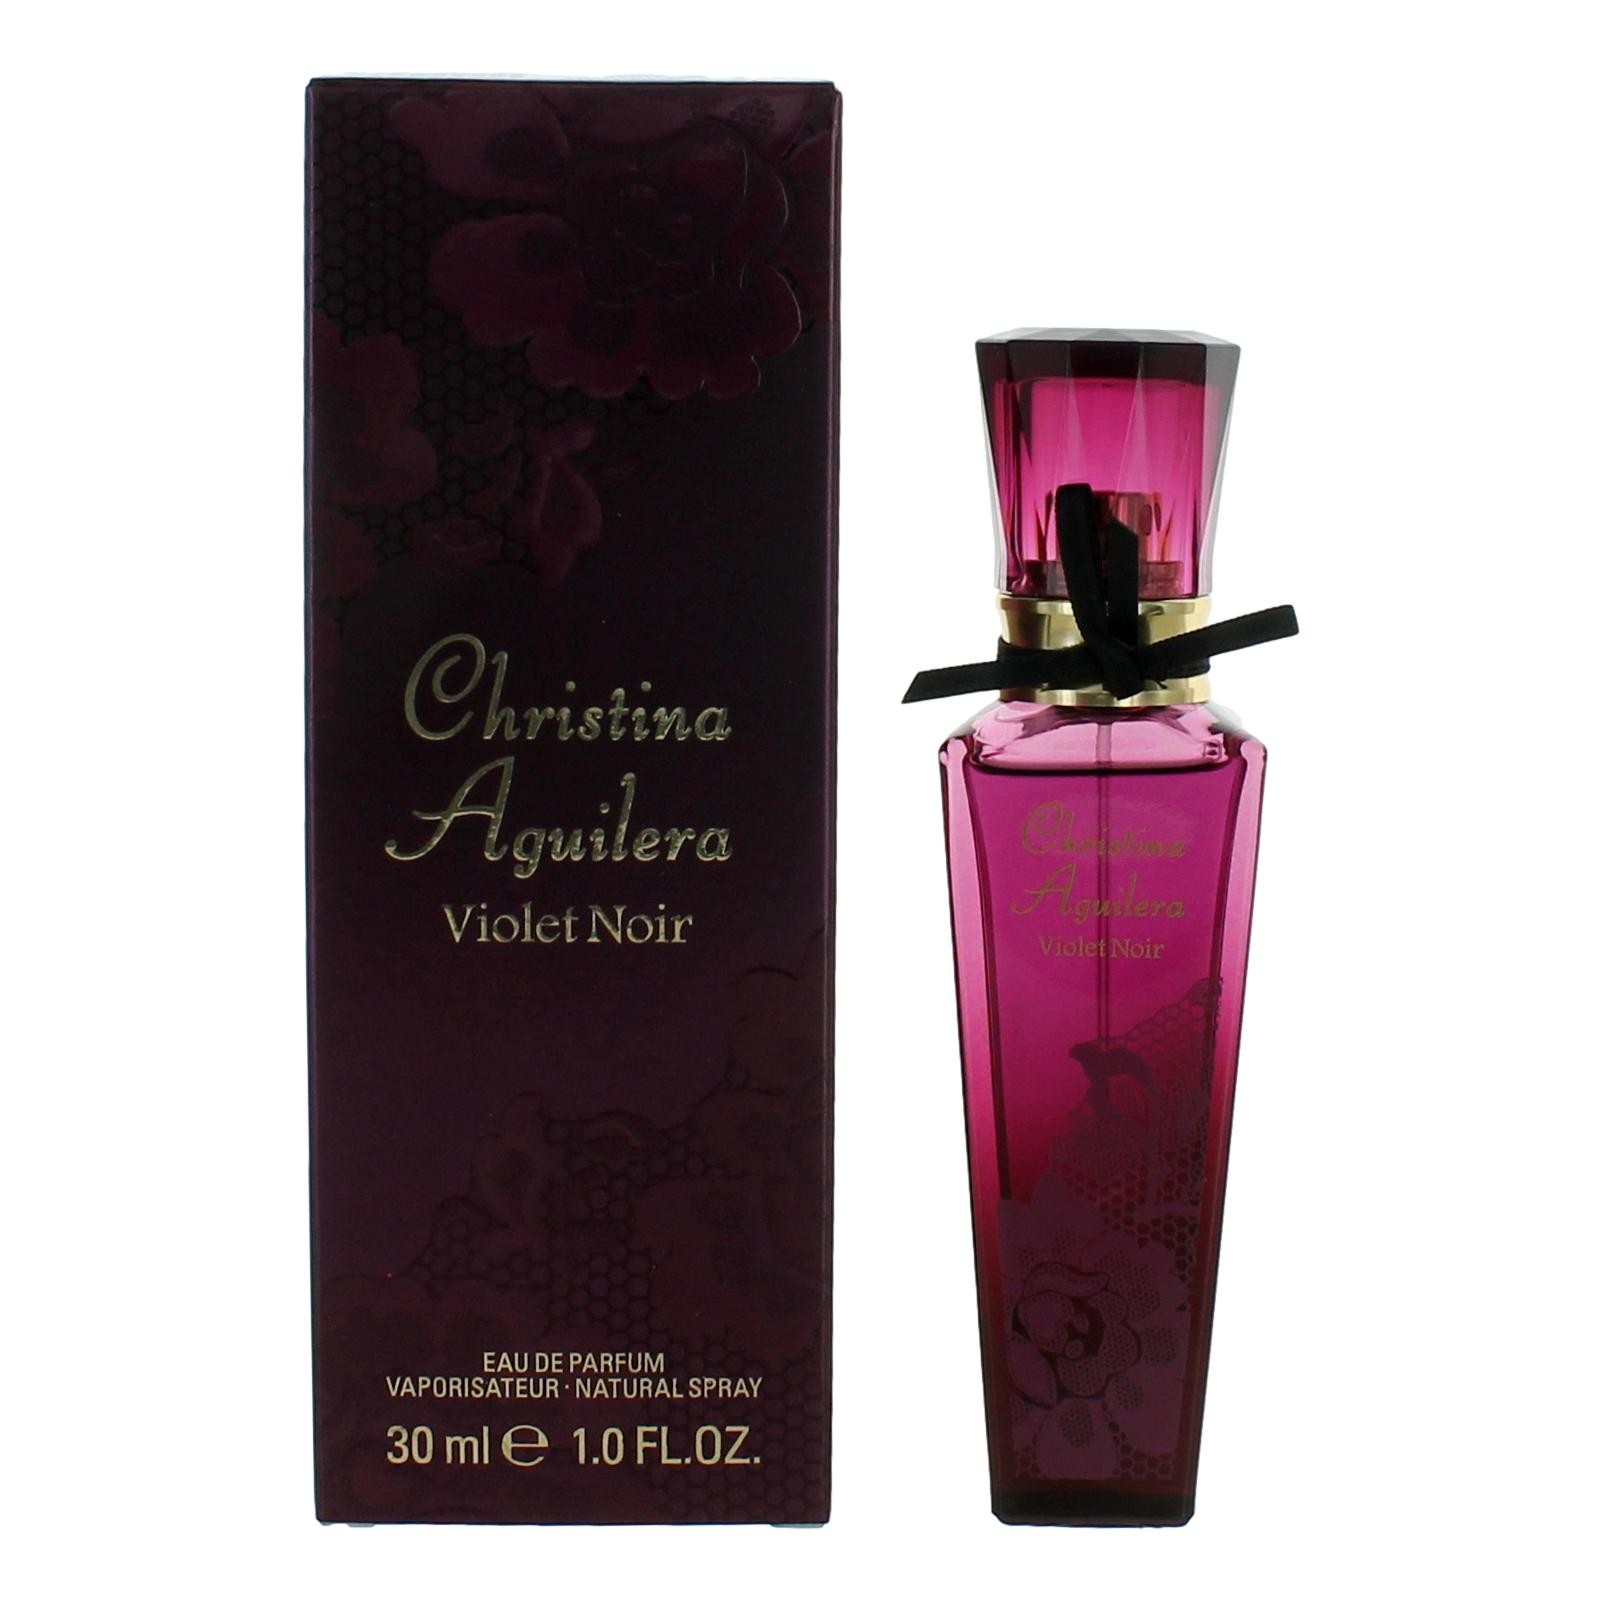 Violet Noir by Christina Aguilera 1 oz Eau De Parfum Spray for Women